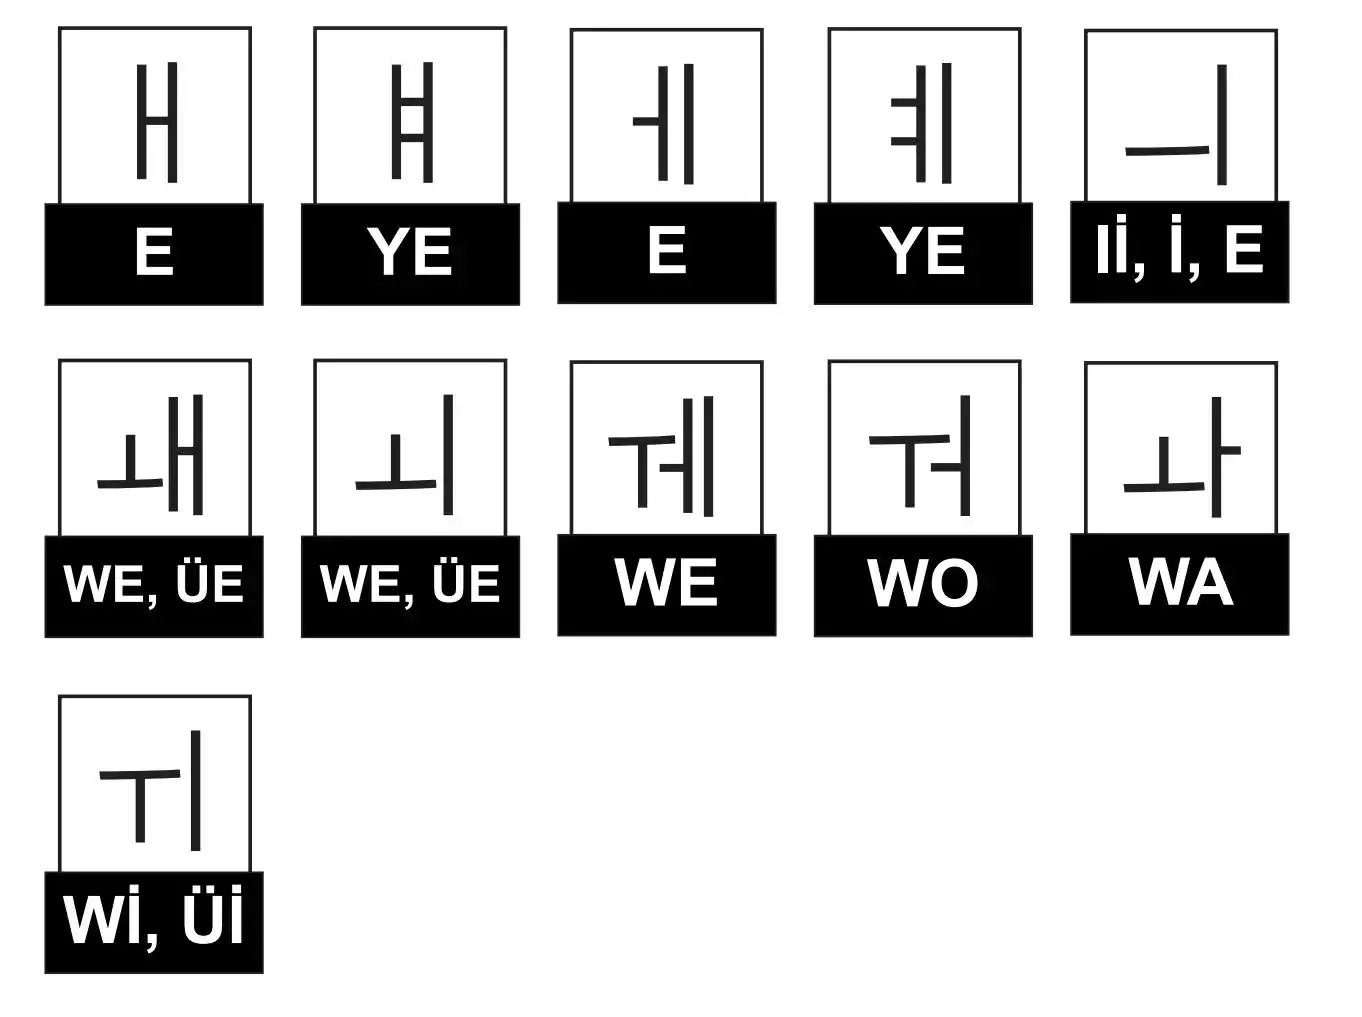 kore-alfabesi-yari-sesli-harfler-1